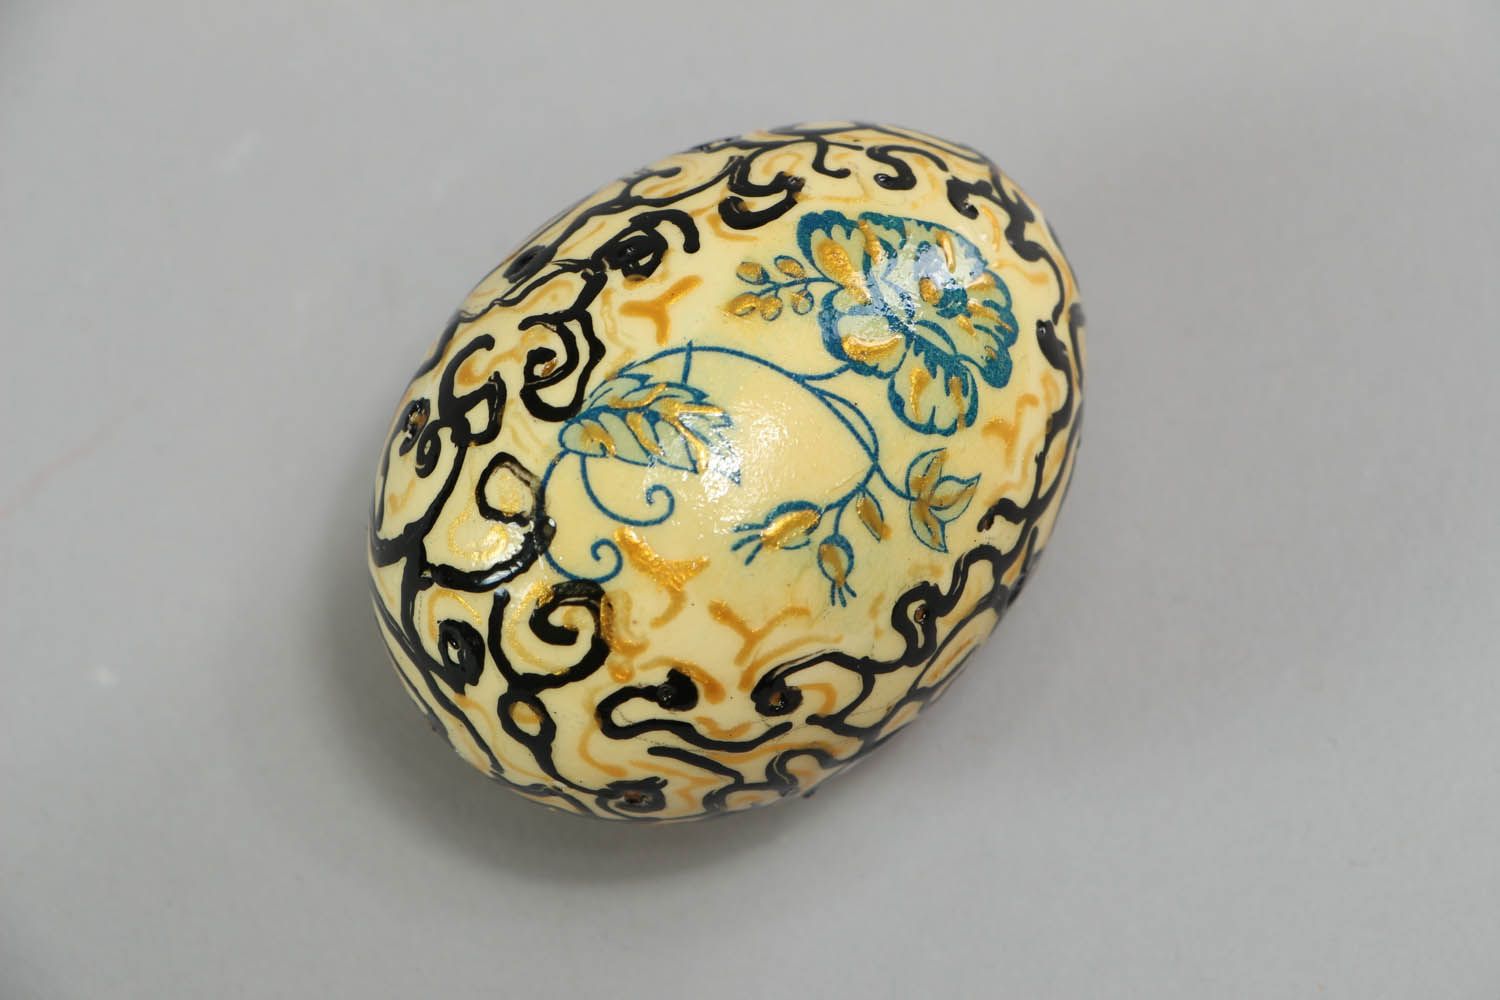 Painted decorative egg photo 1